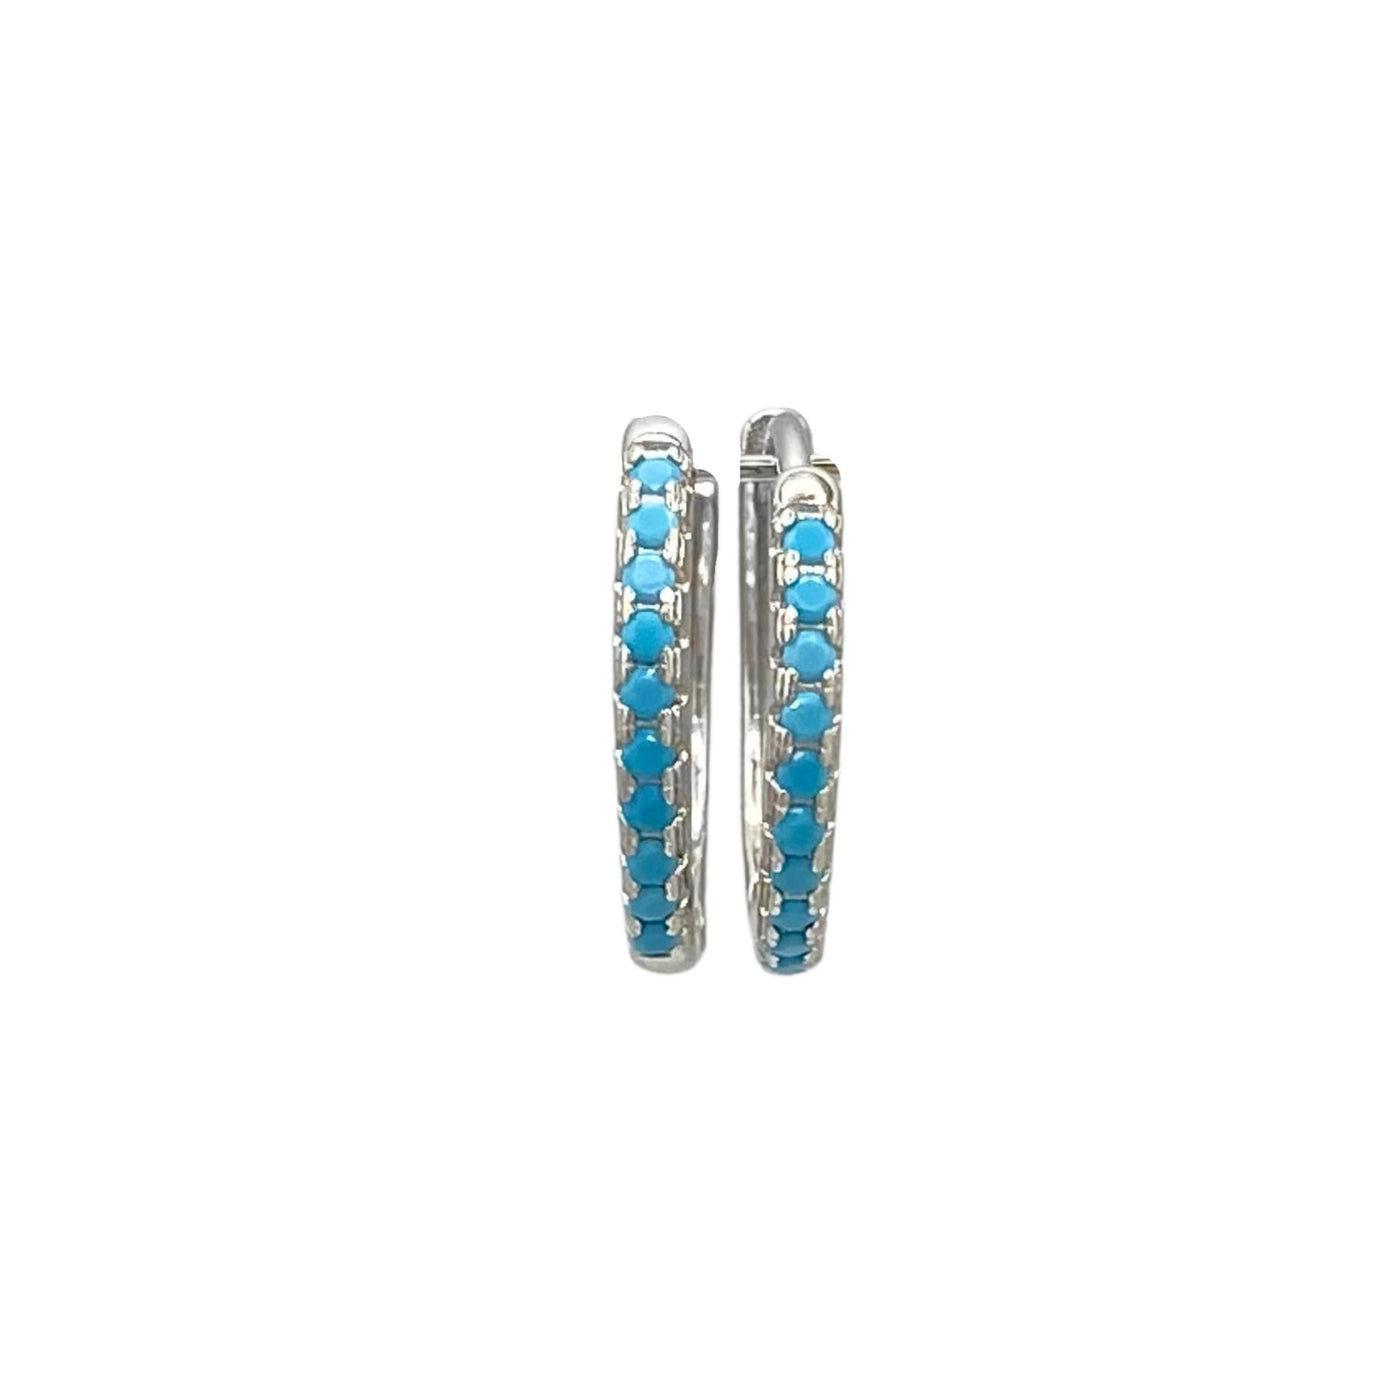 Silver hoop earrings with stones - rhodium -15 mm